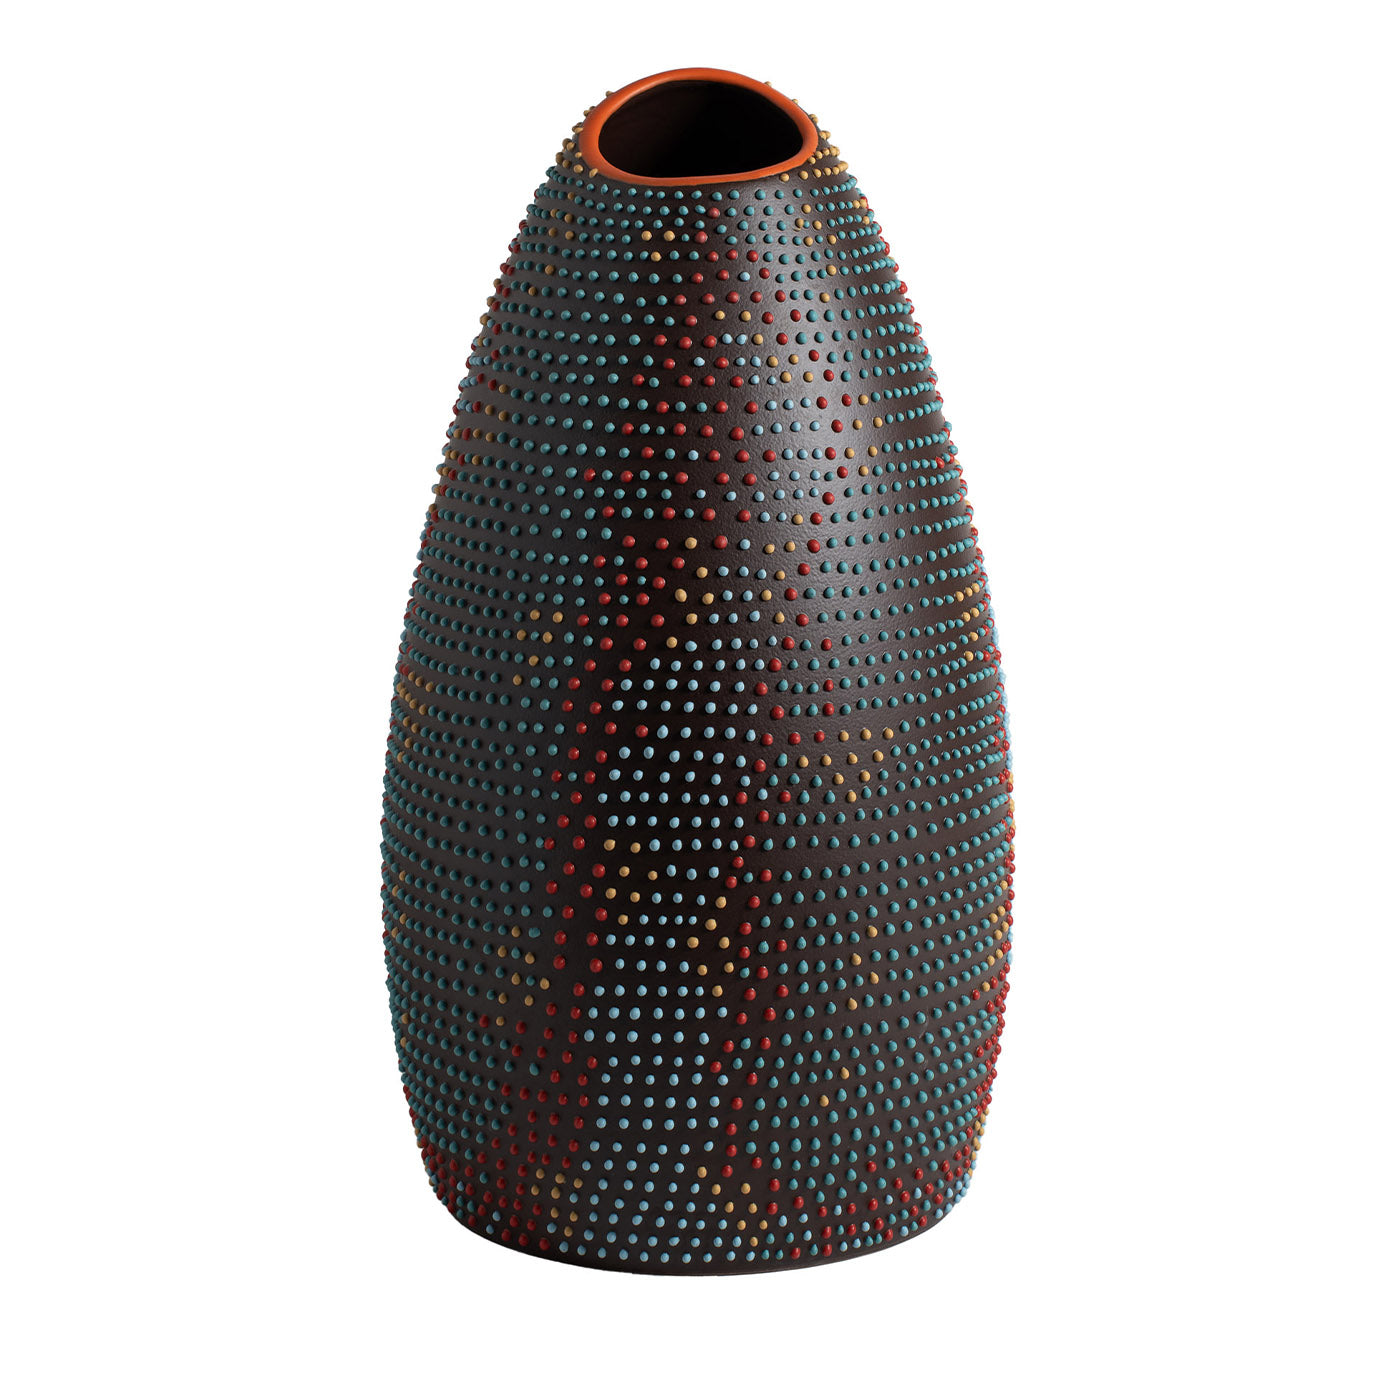 Vase polychrome RIC-4 Chameleon par A. Mancuso/Analogia Projects - Vue principale